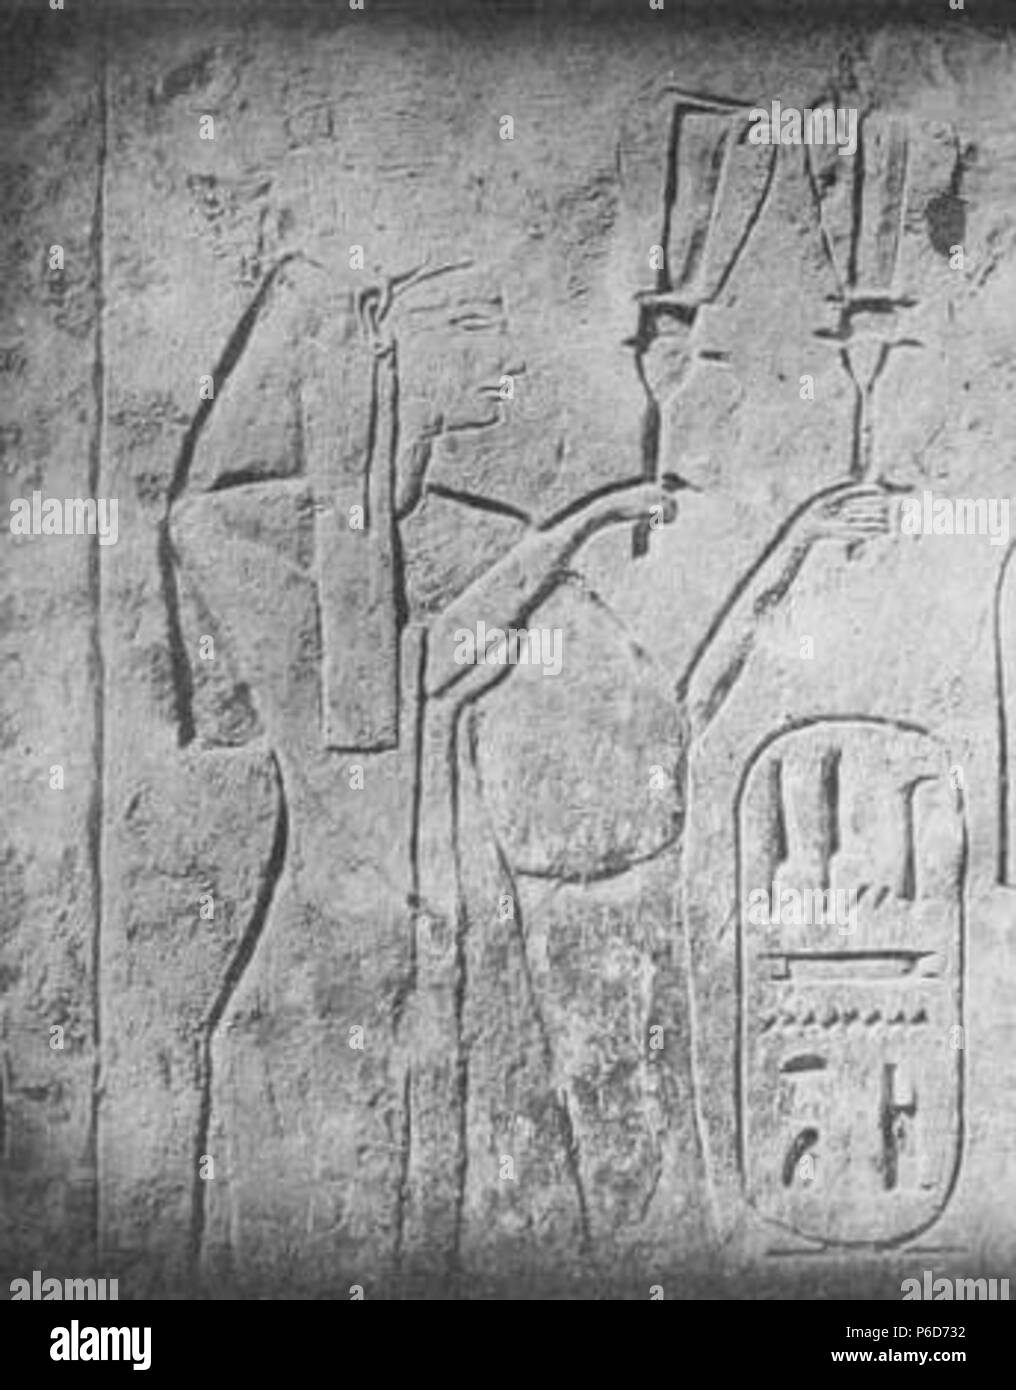 Englisch: Platte mit Entlastung der Königin Tiy-Merenese (und ihre Kartusche), die Frau des Pharao Sethnakht und Mutter von Pharao Ramses III. Von Abydos, 20. Dynastie (später wiederverwendet) jetzt im Museum von Kairo (je 36339). 11 Mai 2014, 17:51:53 71 Relief Tiy-Merenese Petrie Stockfoto